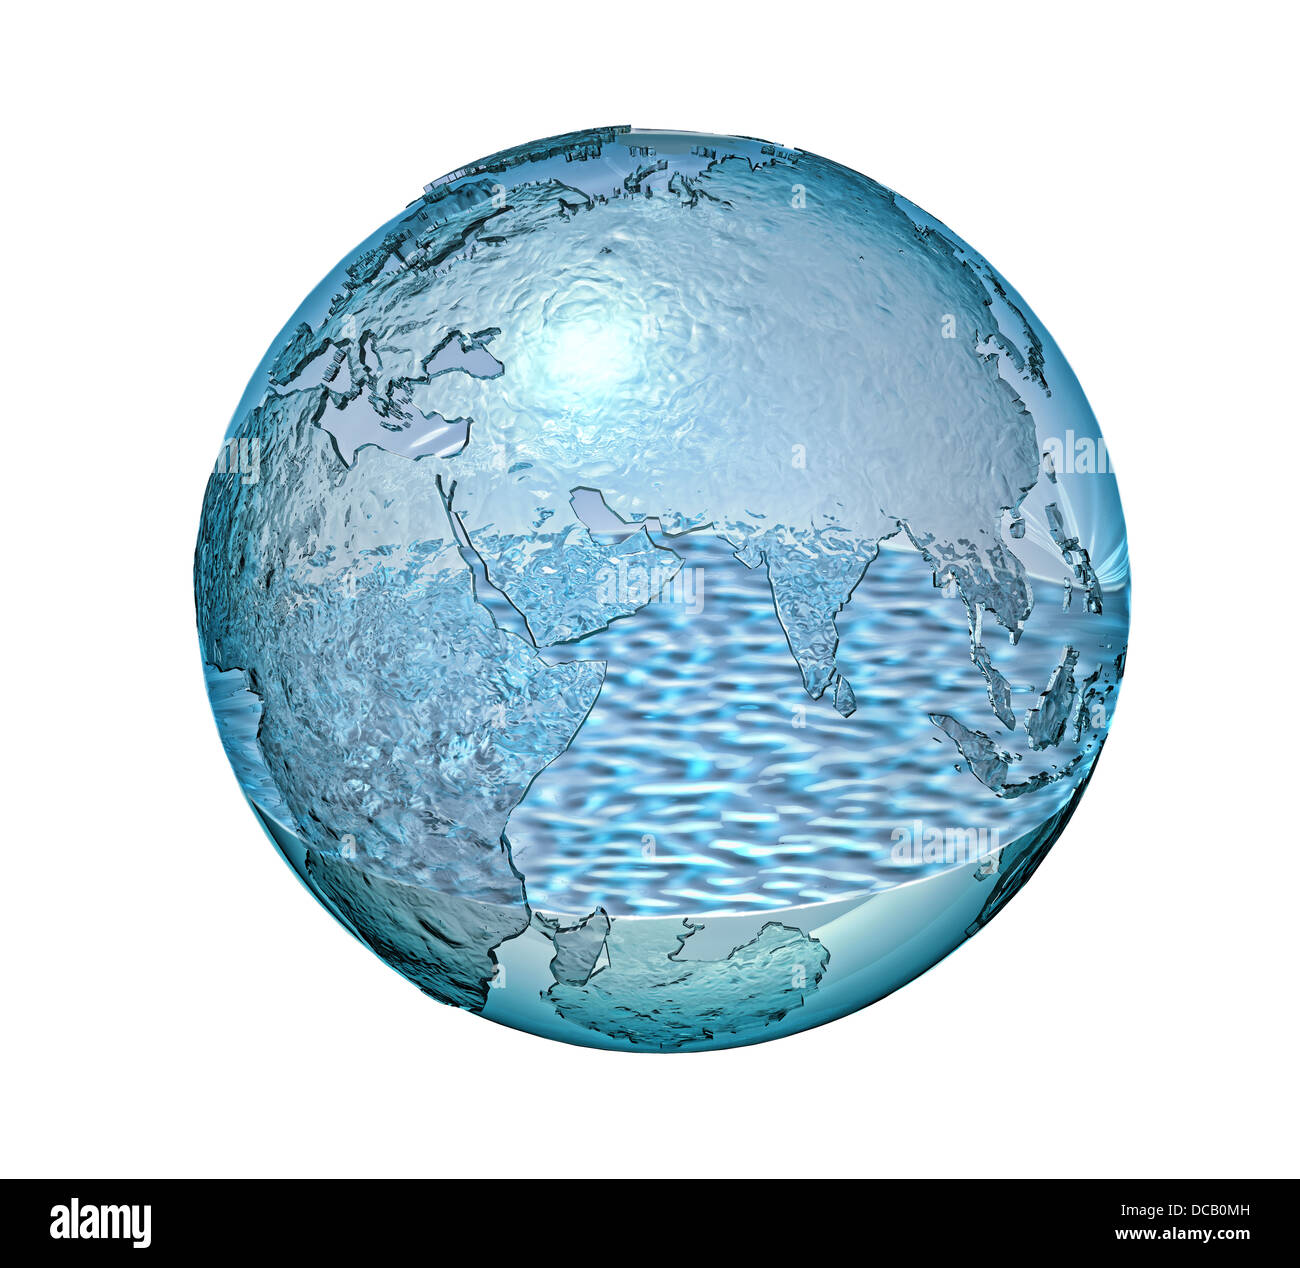 Il pianeta terra realizzata in vetro con una piccola quantità di acqua all'interno. Isolato su sfondo bianco. Percorso di clipping incluso. Foto Stock